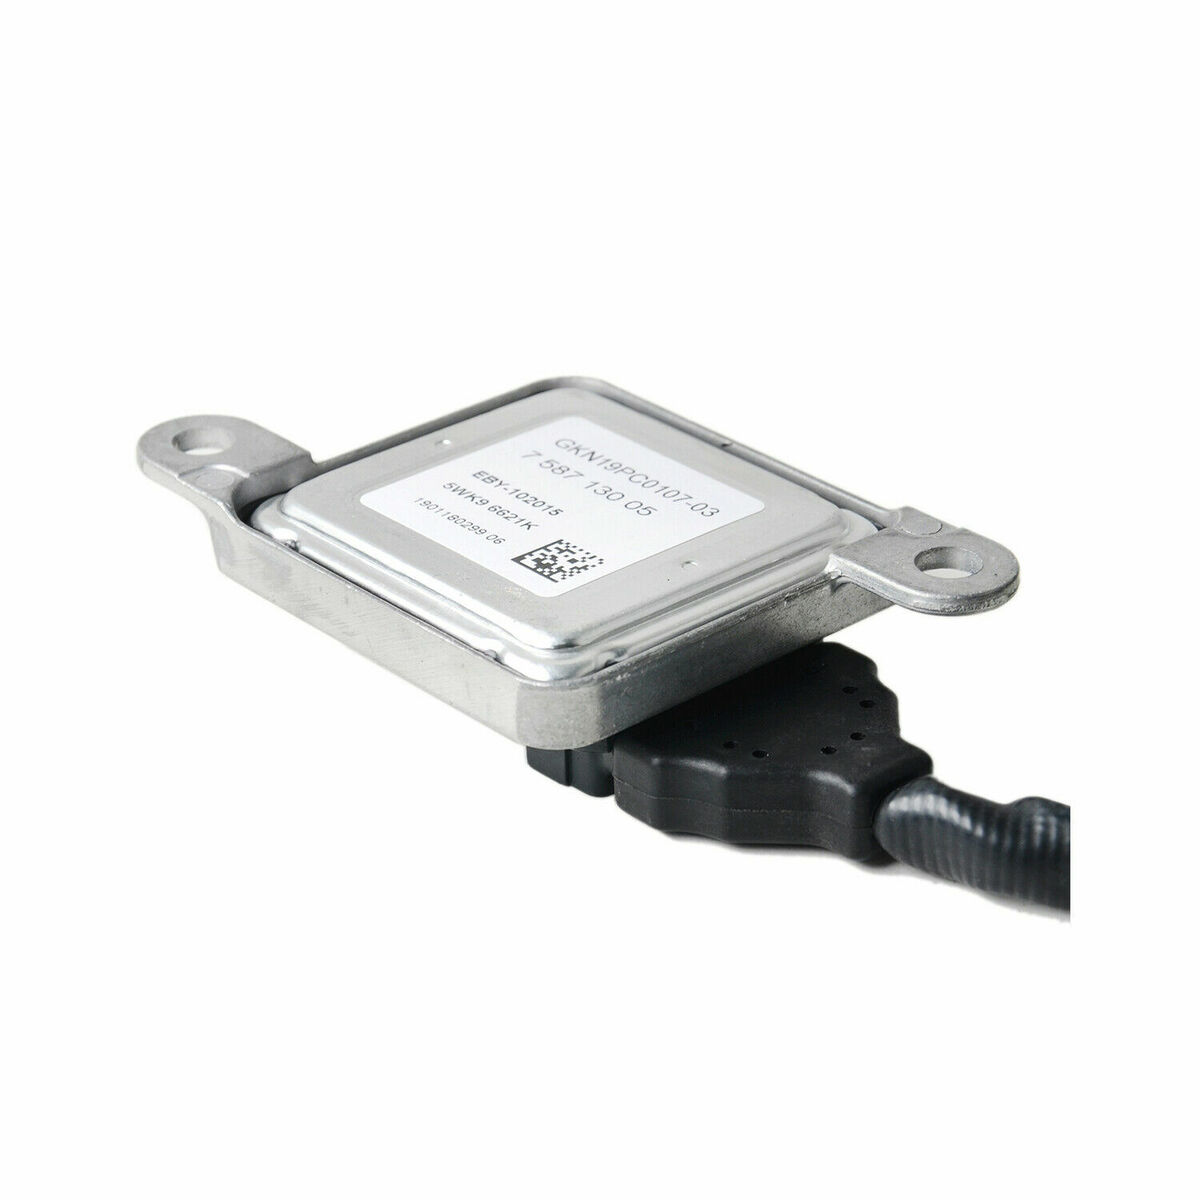 Nox Sensor Steuergerät für BMW 1er E E E E E E NEU   eBay